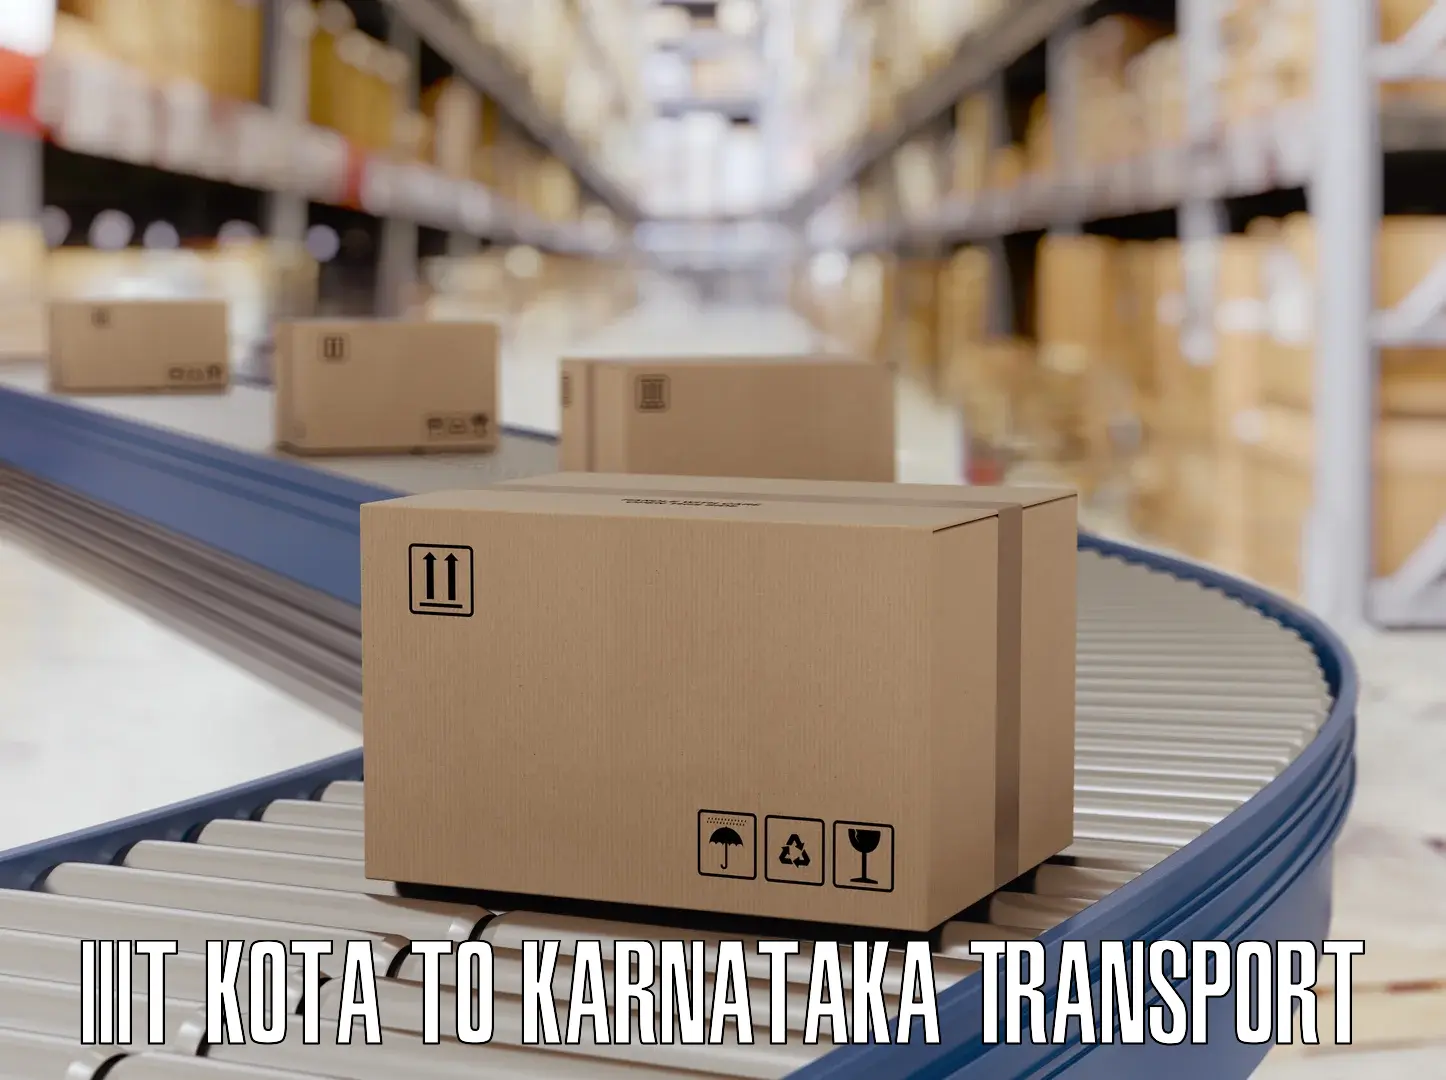 Goods delivery service IIIT Kota to Kotturu